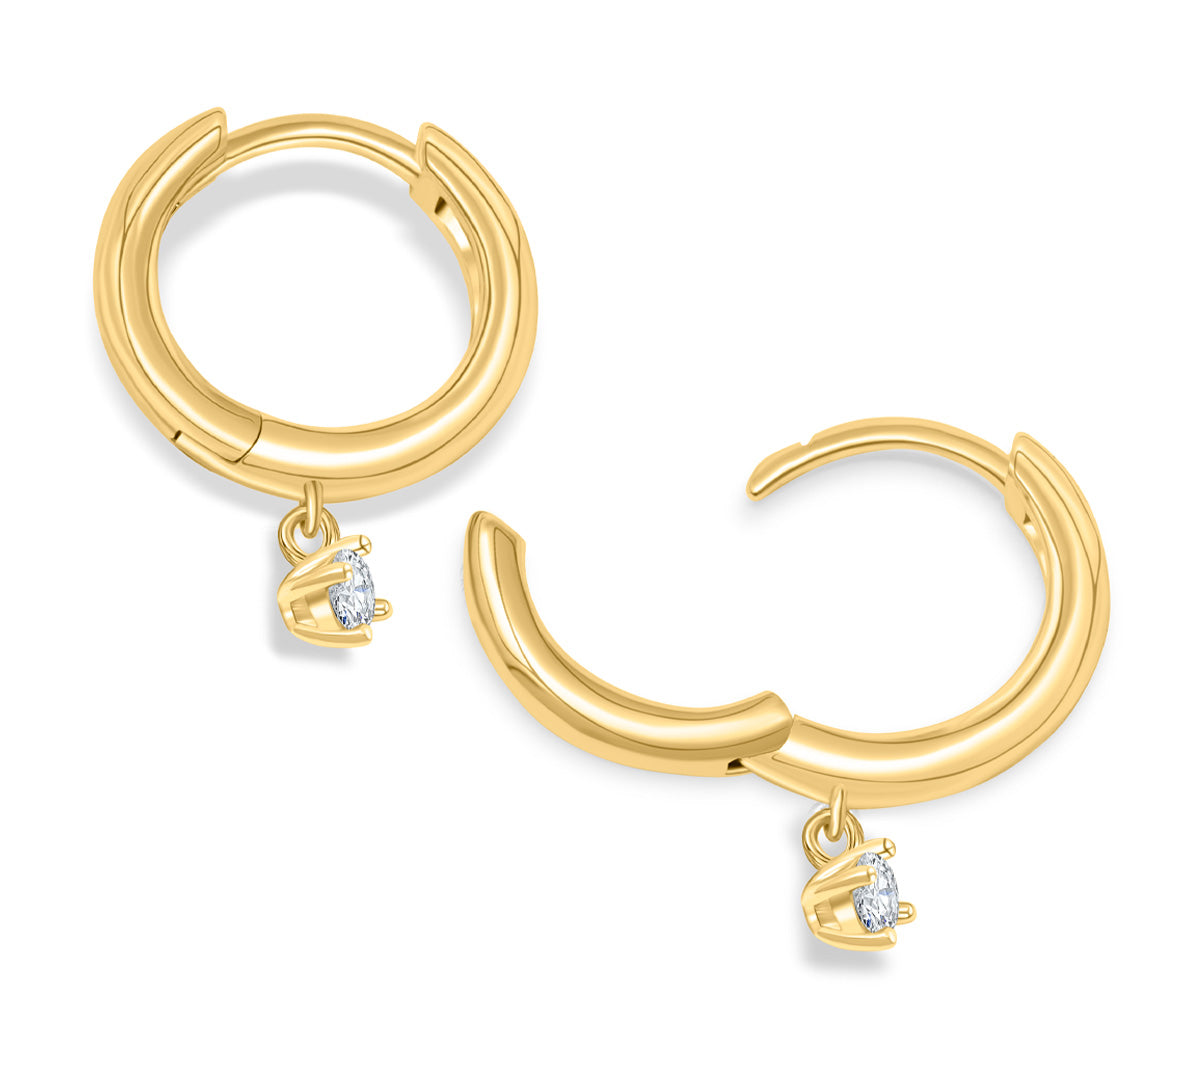 Cute gold plated hoop earrings